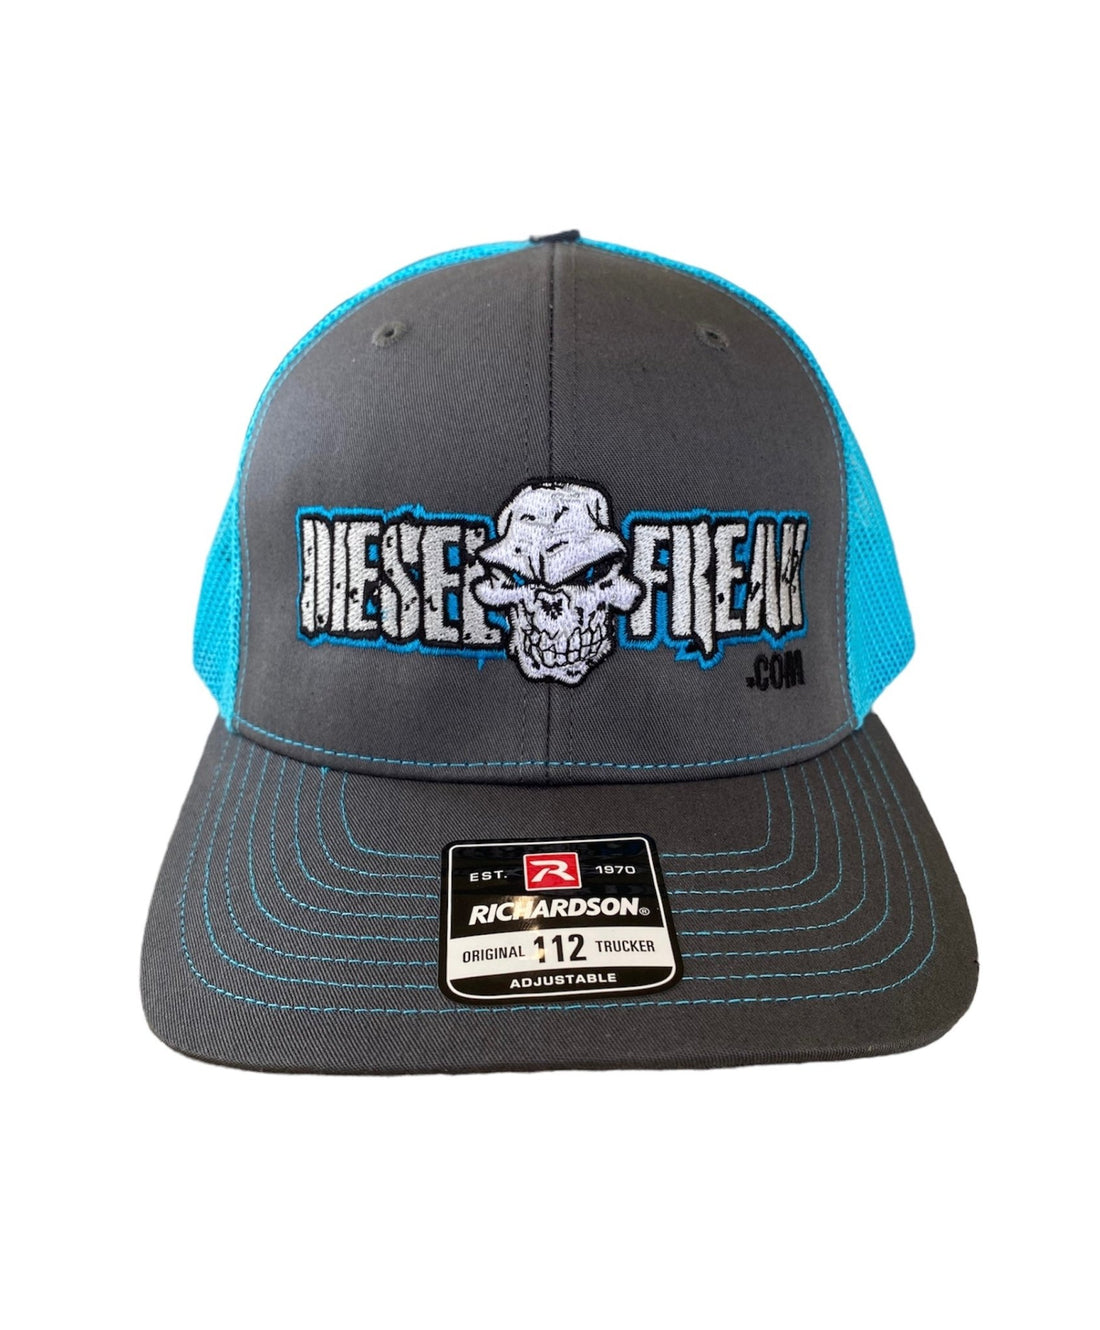 Blue and Grey Diesel Freak Snapback Hat - Diesel Freak